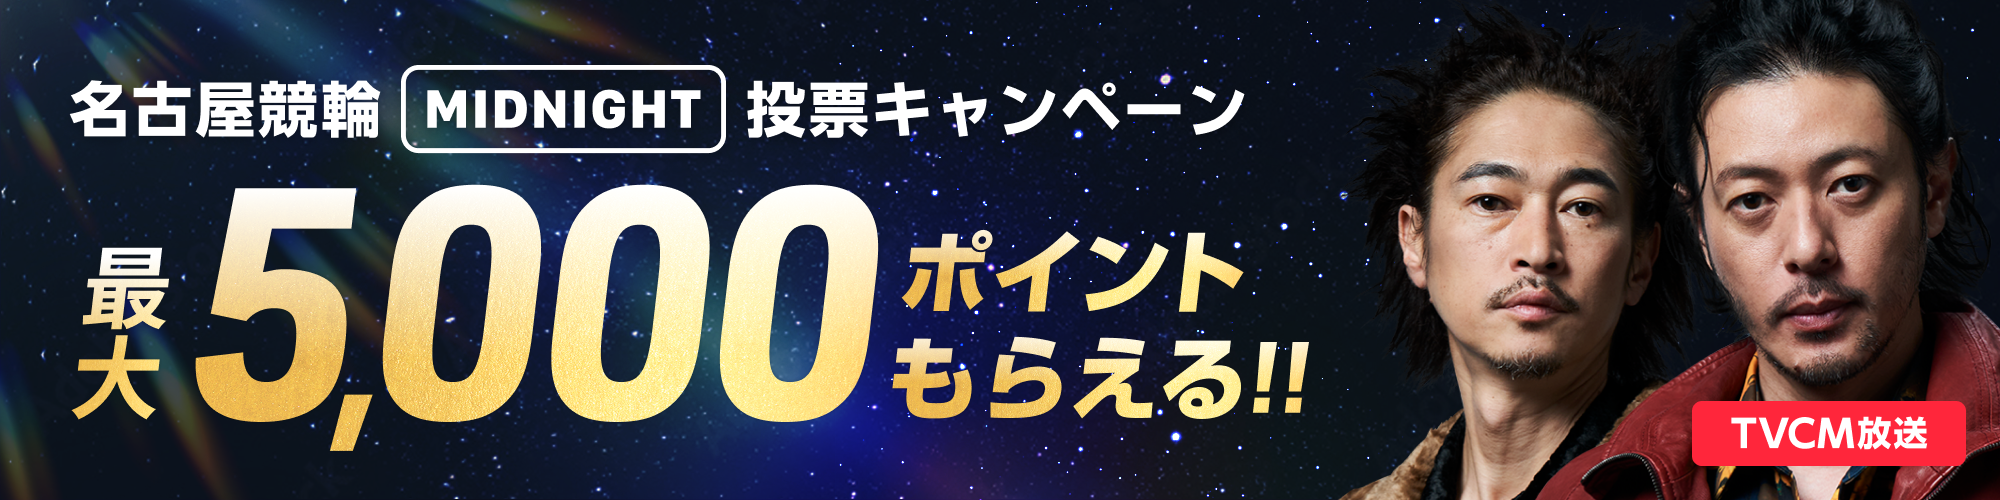 【金シャチ5 in Midnight】名古屋競輪 ミッドナイト 投票キャンペーン